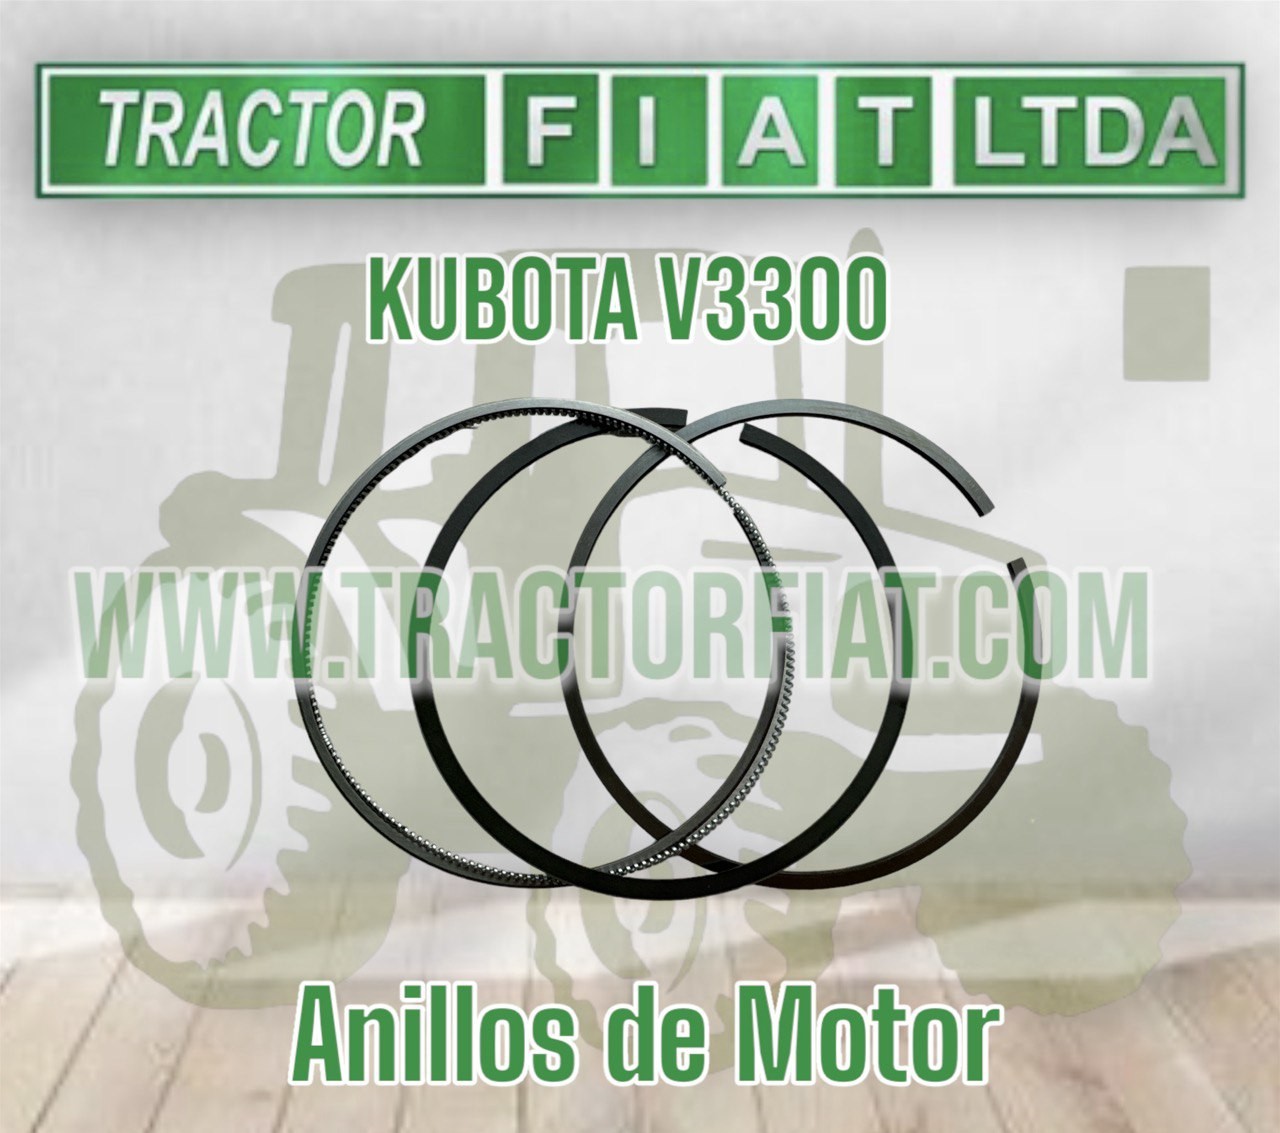 ANILLOS DE MOTOR KUBOTA V3300